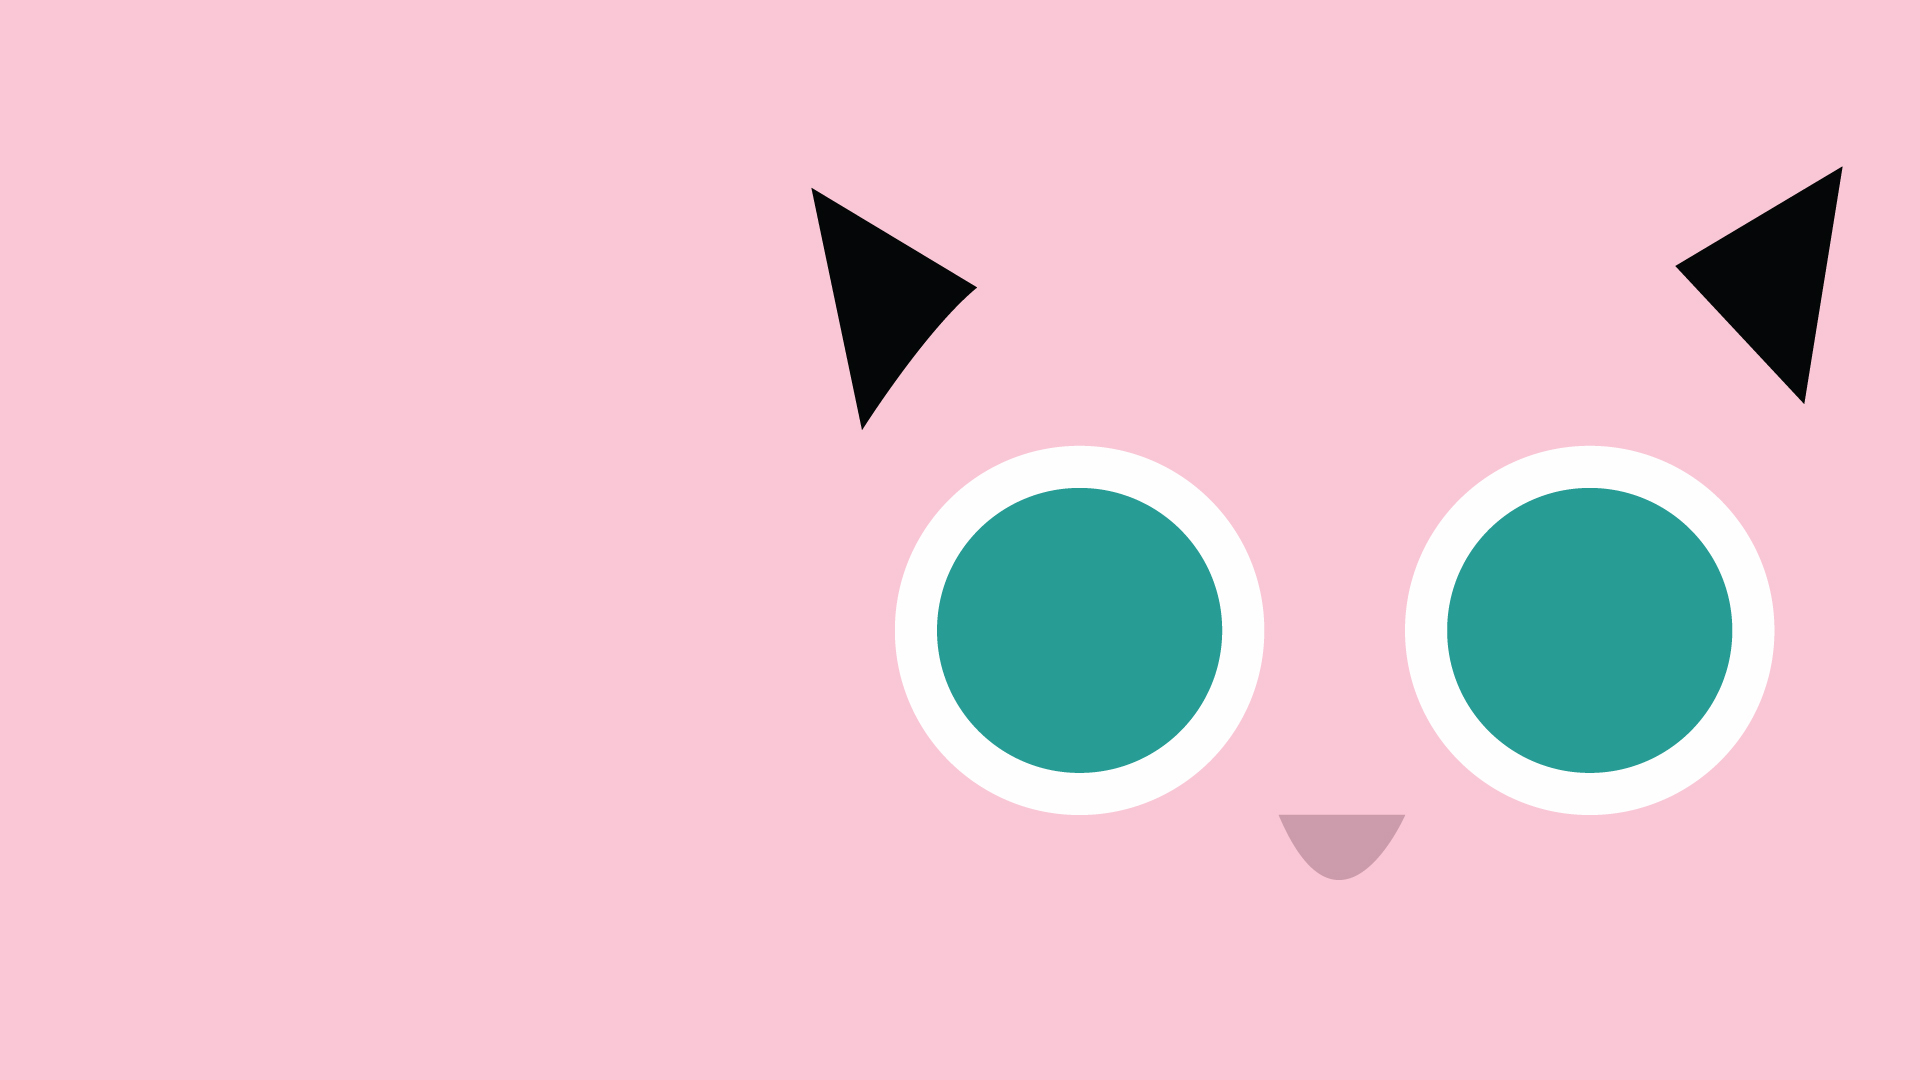 pokemon wallpaper hd,pink,font,graphic design,circle,eye